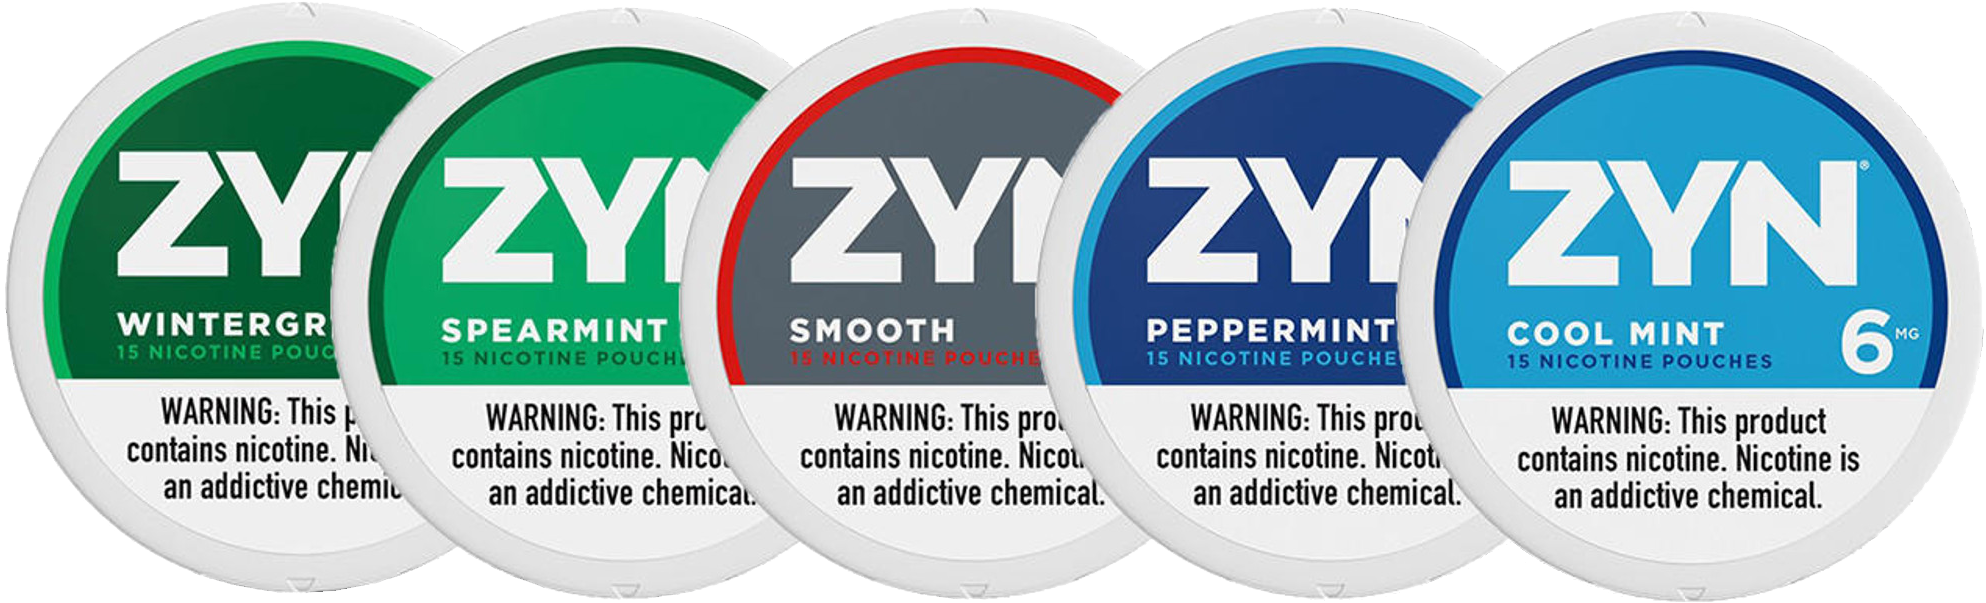 Zyn 6mg Wintergreen, Zyn 6mg Smooth, Zyn 6mg Peppermint, Zyn 6mg Cool Mint, Zyn 6mg Chill